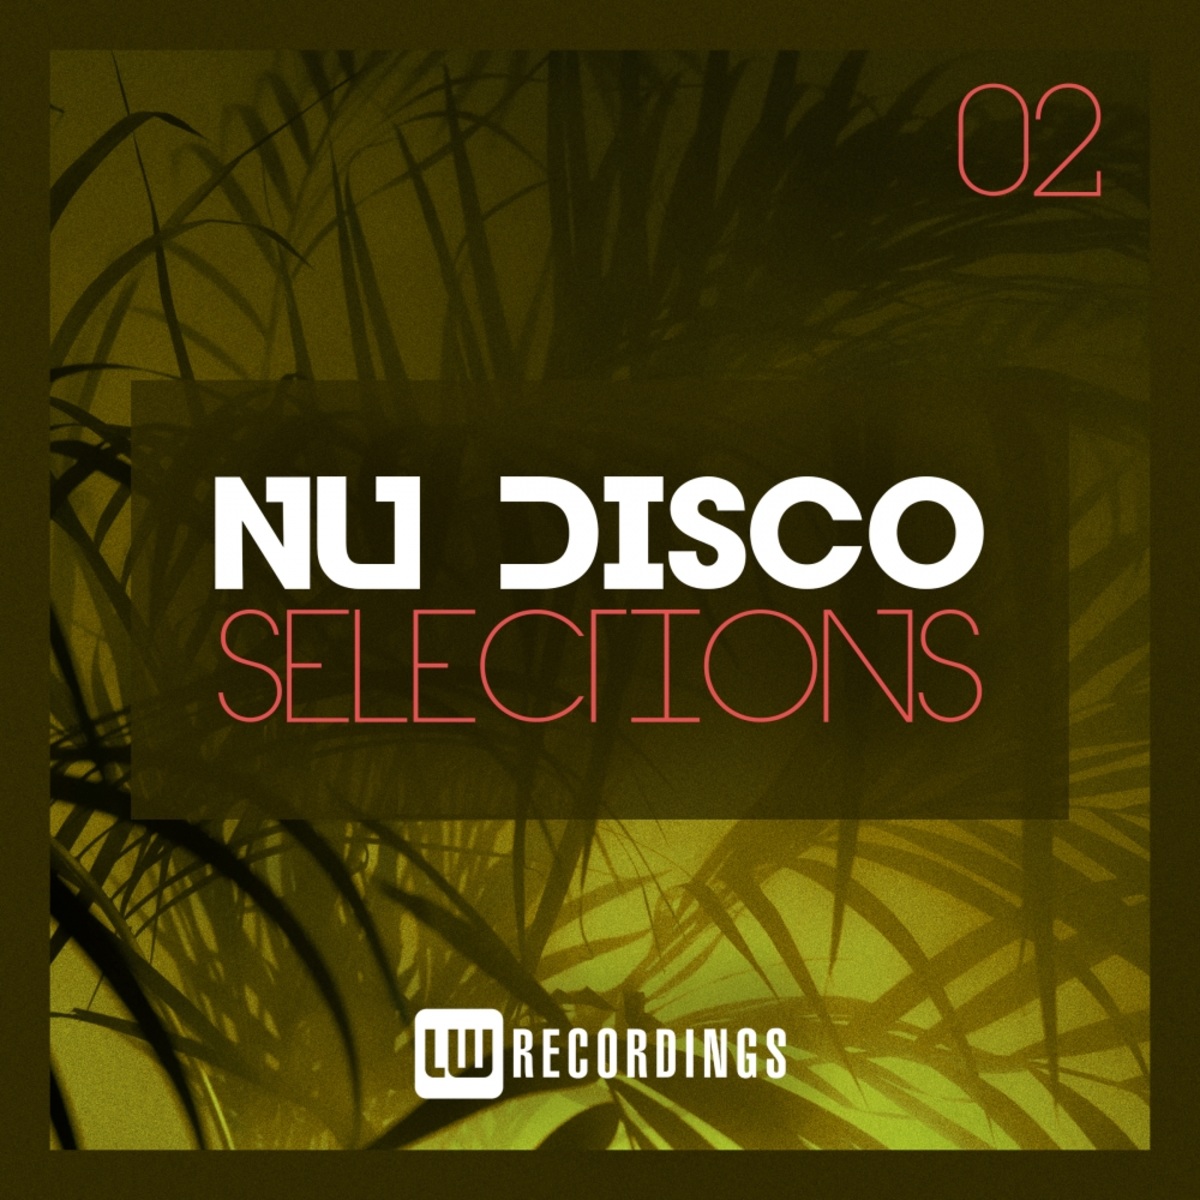 VA - Nu-Disco Selections, Vol. 02 / LW Recordings